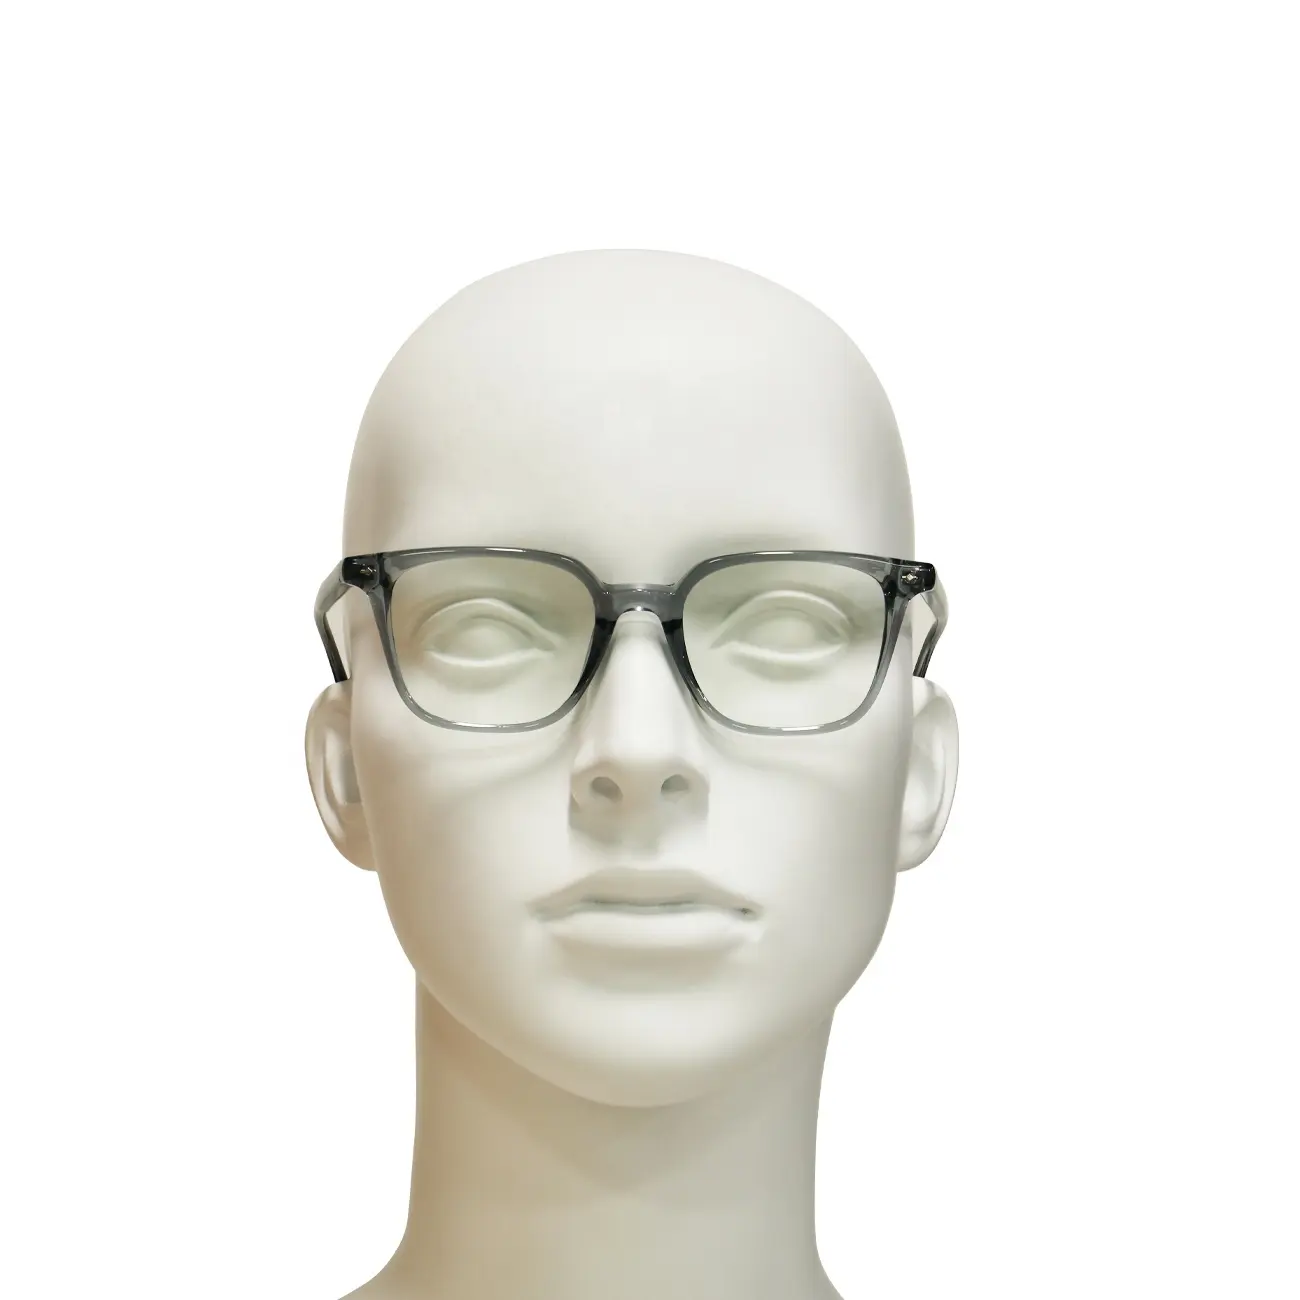 Di alta qualità unico uomo donna fatto a mano occhiali da vista in acetato montature trasparenti Retro AC occhiali da vista